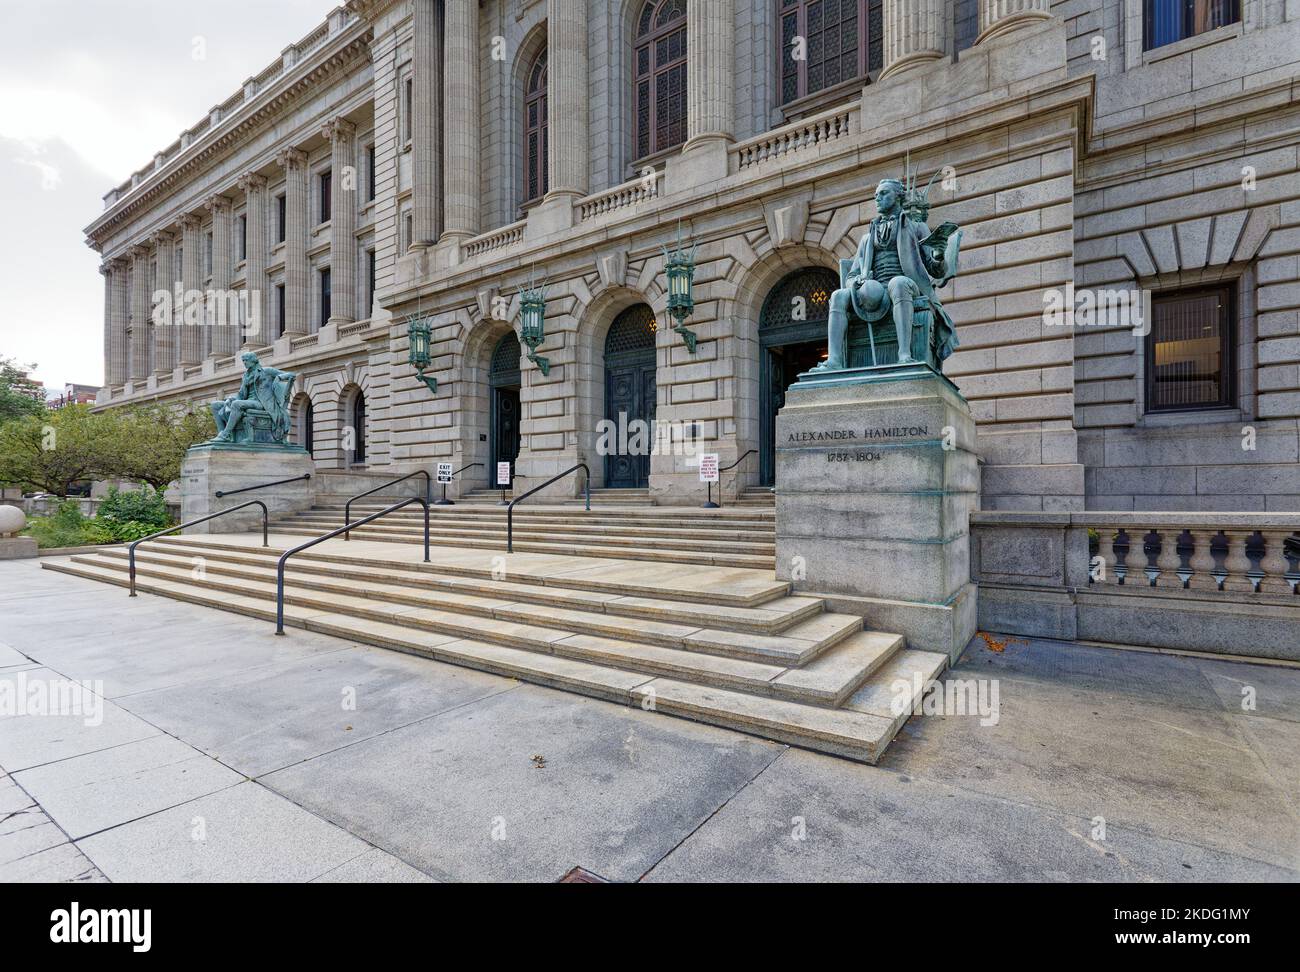 Cuyahoga County Court House è una gemella visiva del Cleveland City Hall, a due isolati a est su Lakeside Avenue. Foto Stock